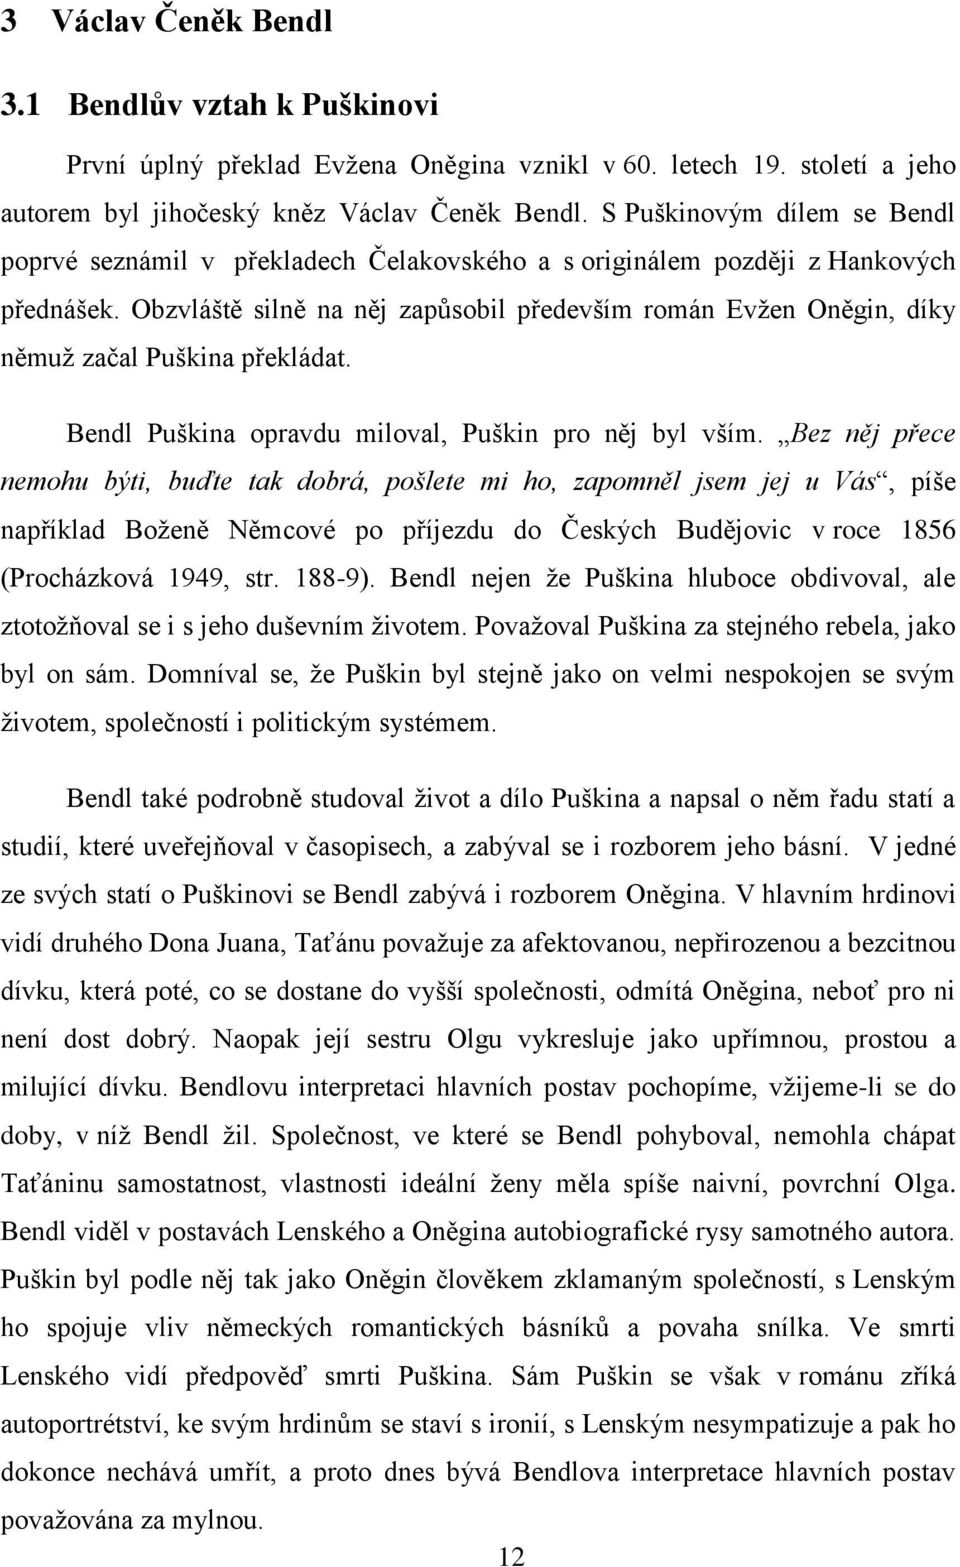 Obzvláště silně na něj zapůsobil především román Evţen Oněgin, díky němuţ začal Puškina překládat. Bendl Puškina opravdu miloval, Puškin pro něj byl vším.